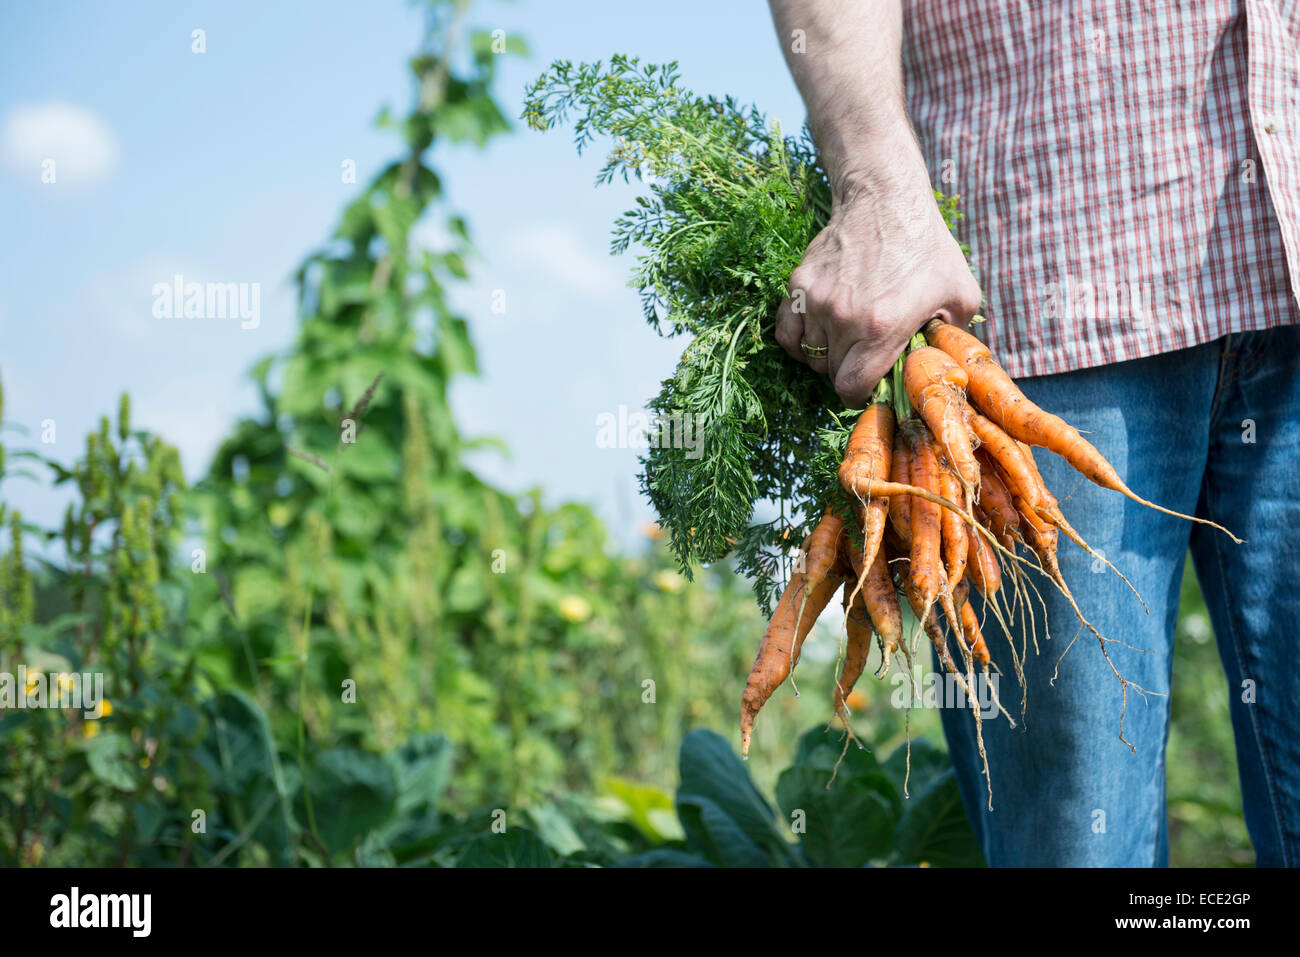 Les légumes bio man holding carrots garden Banque D'Images